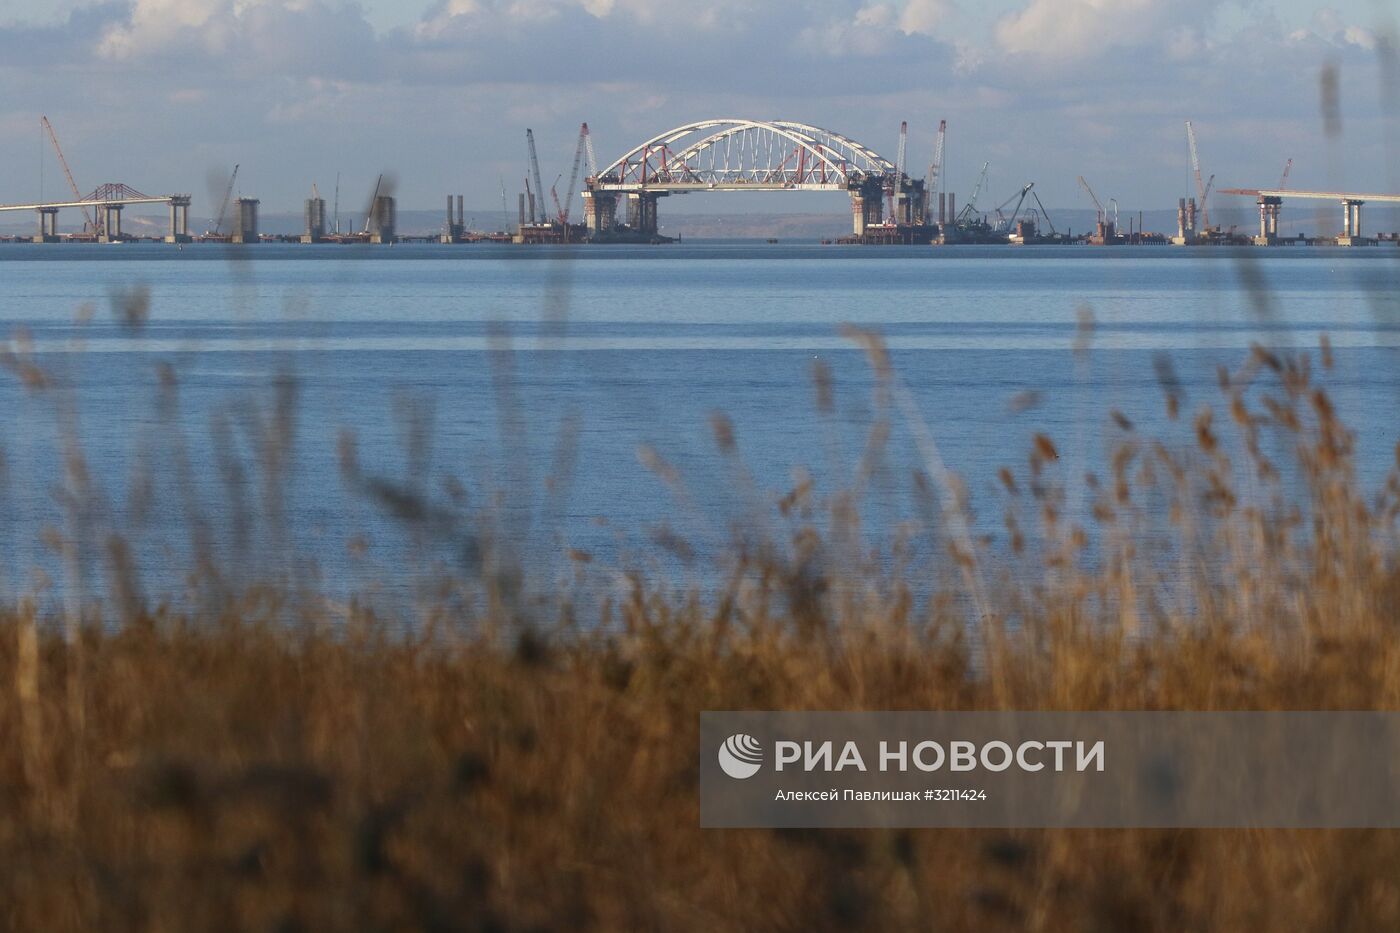 Автодорожная арка Крымского моста поднята на опоры